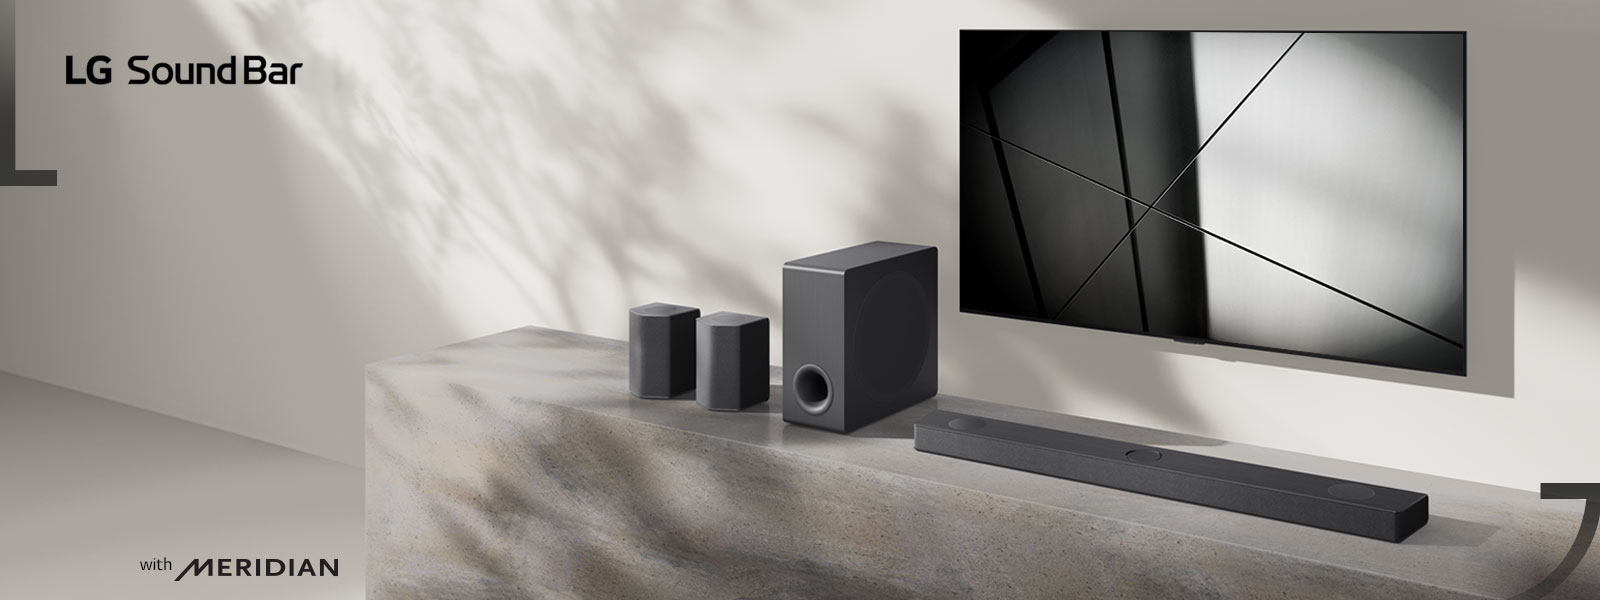 LG Soundbar DS95QR und LG TV werden zusammen im Wohnzimmer aufgestellt